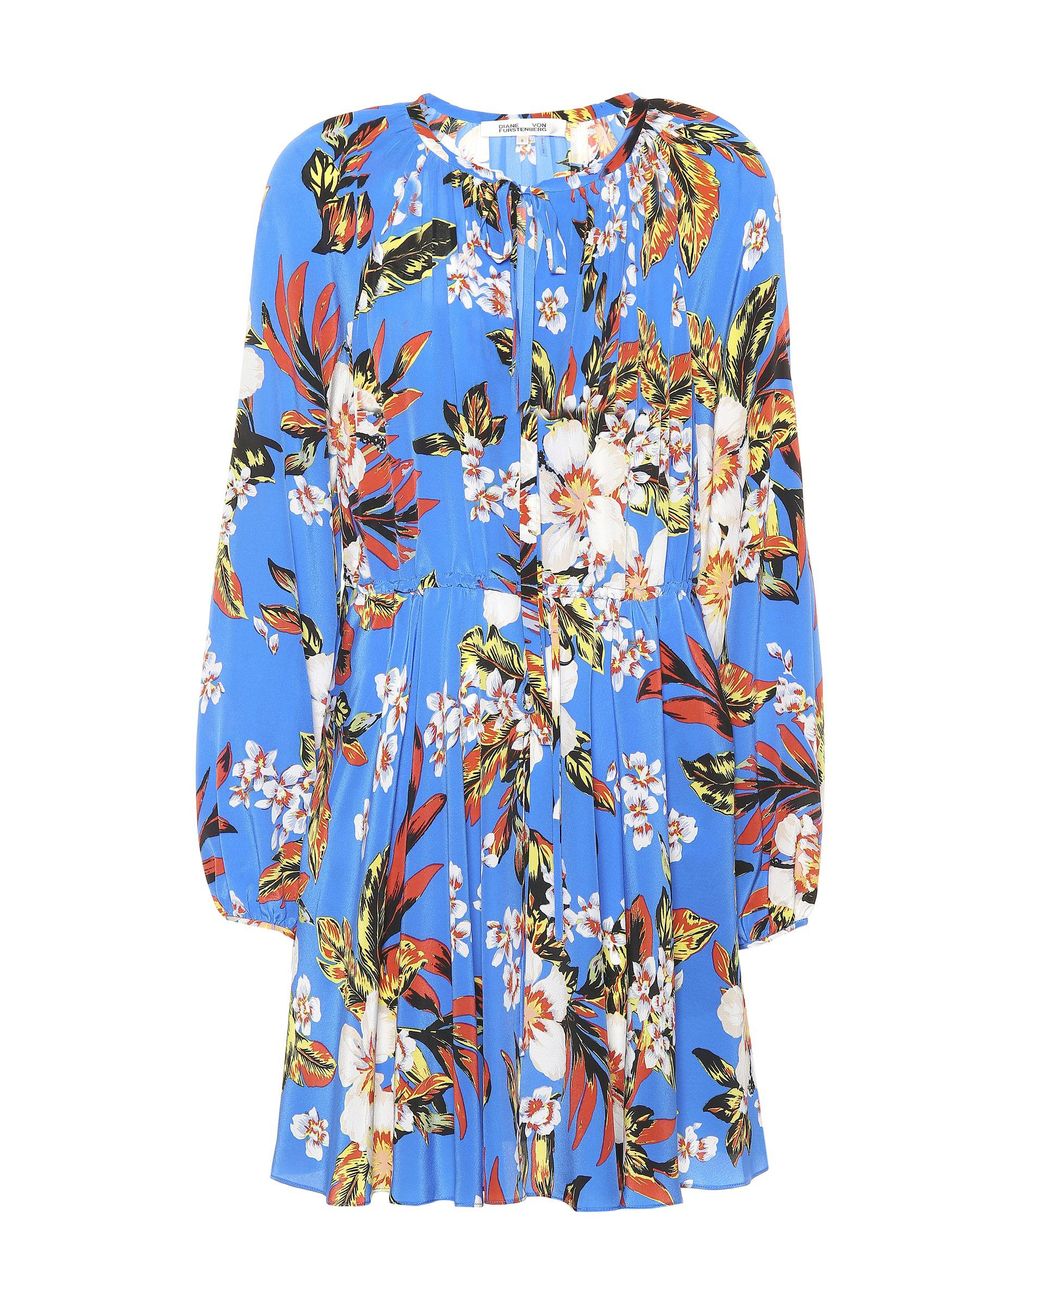 Diane von Furstenberg Floral Silk Dress in Blue - Lyst